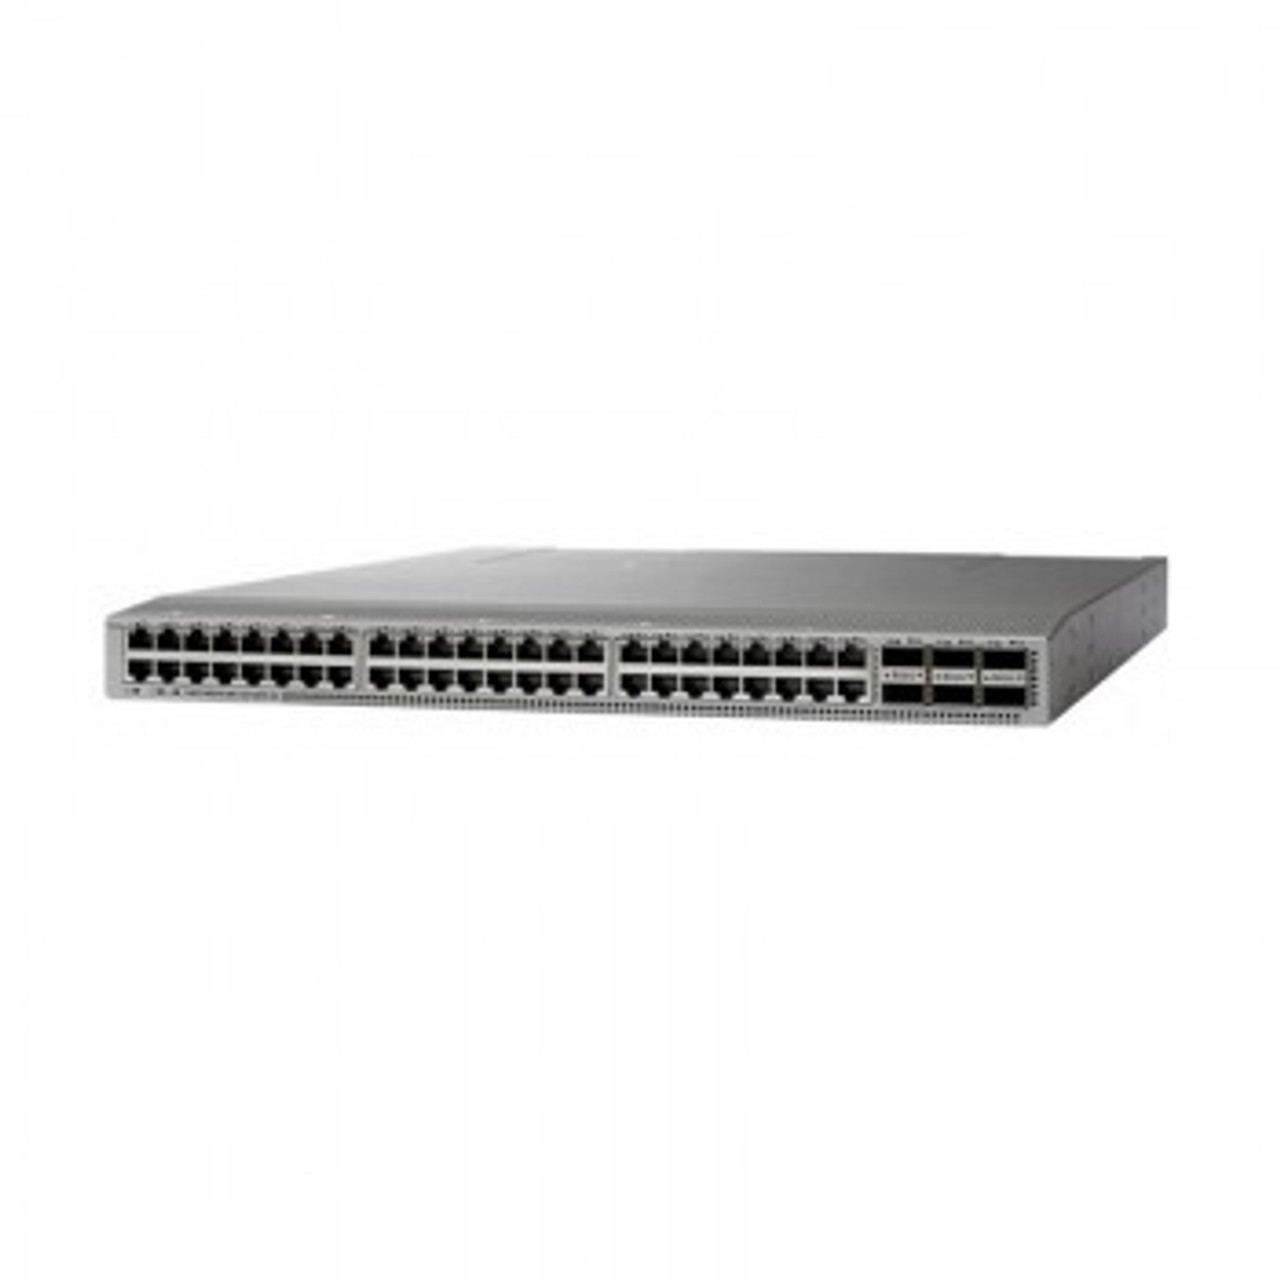 C1-N9K-C93108EXB24 - Cisco Nexus 9000 Series Platform